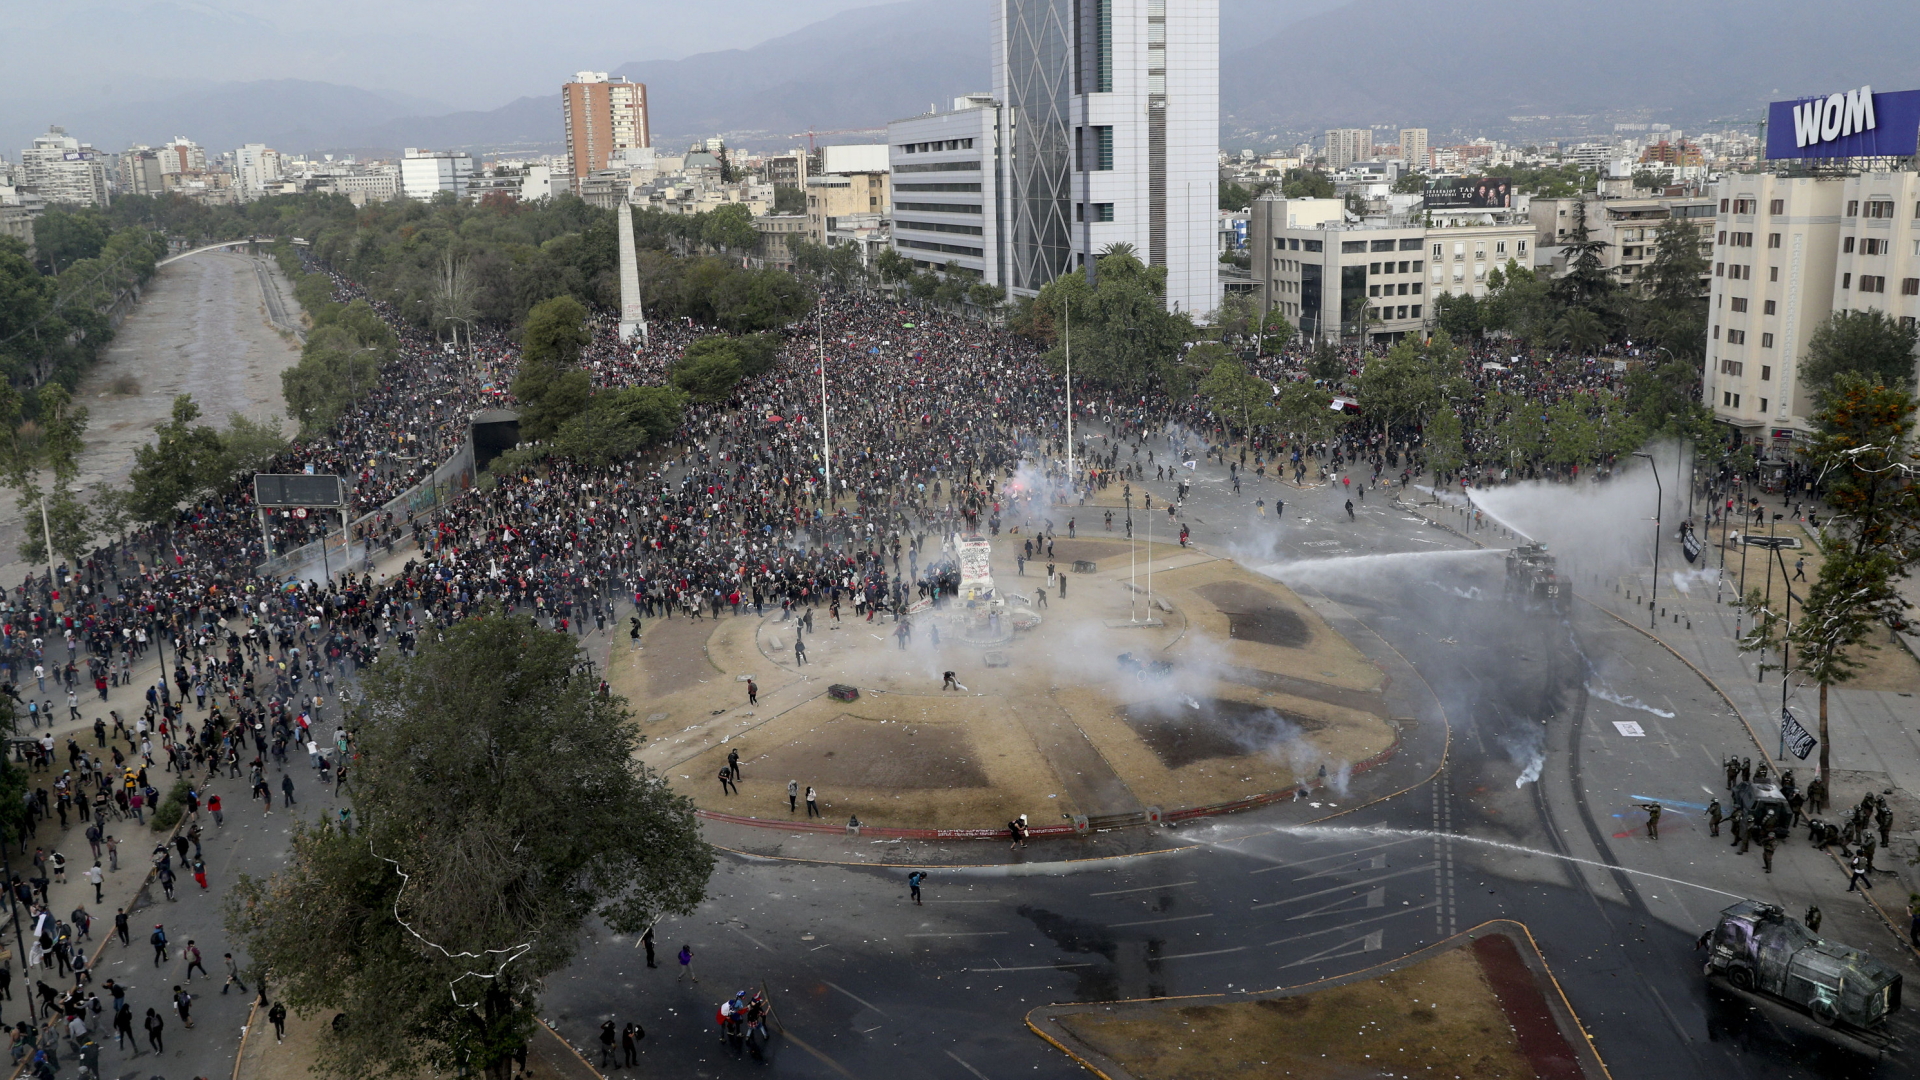 Die Polizei räumt mit Wasserwerfern den Plaza Italia in Santiago de Chile. | Bildquelle: dpa